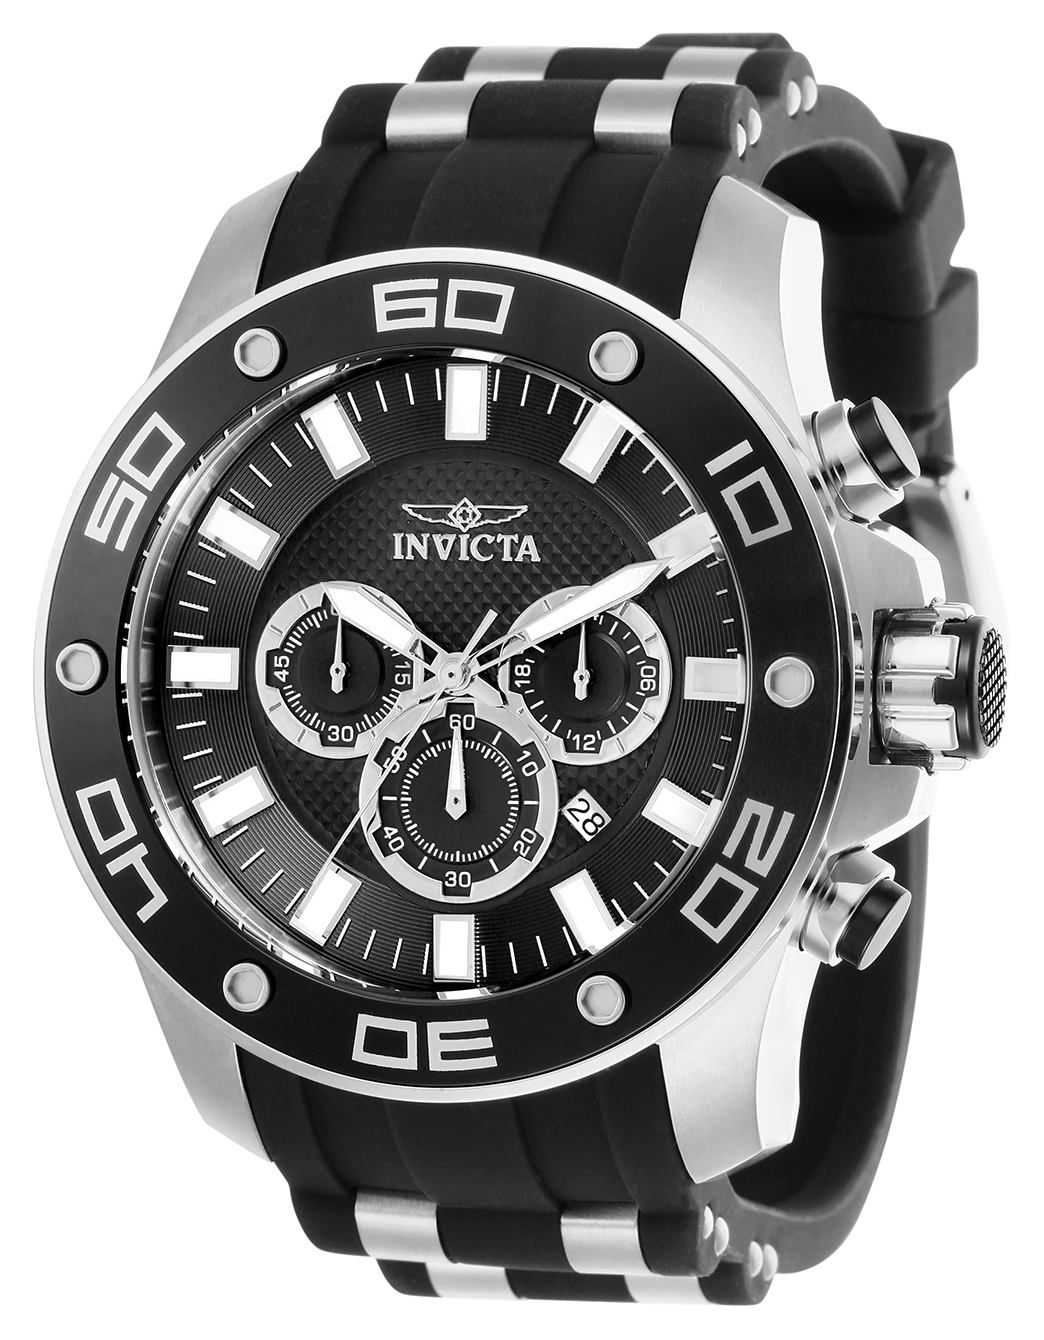 Invicta Pro Diver SCUBA Men's Watch - 50mm, Steel, Black (26084)